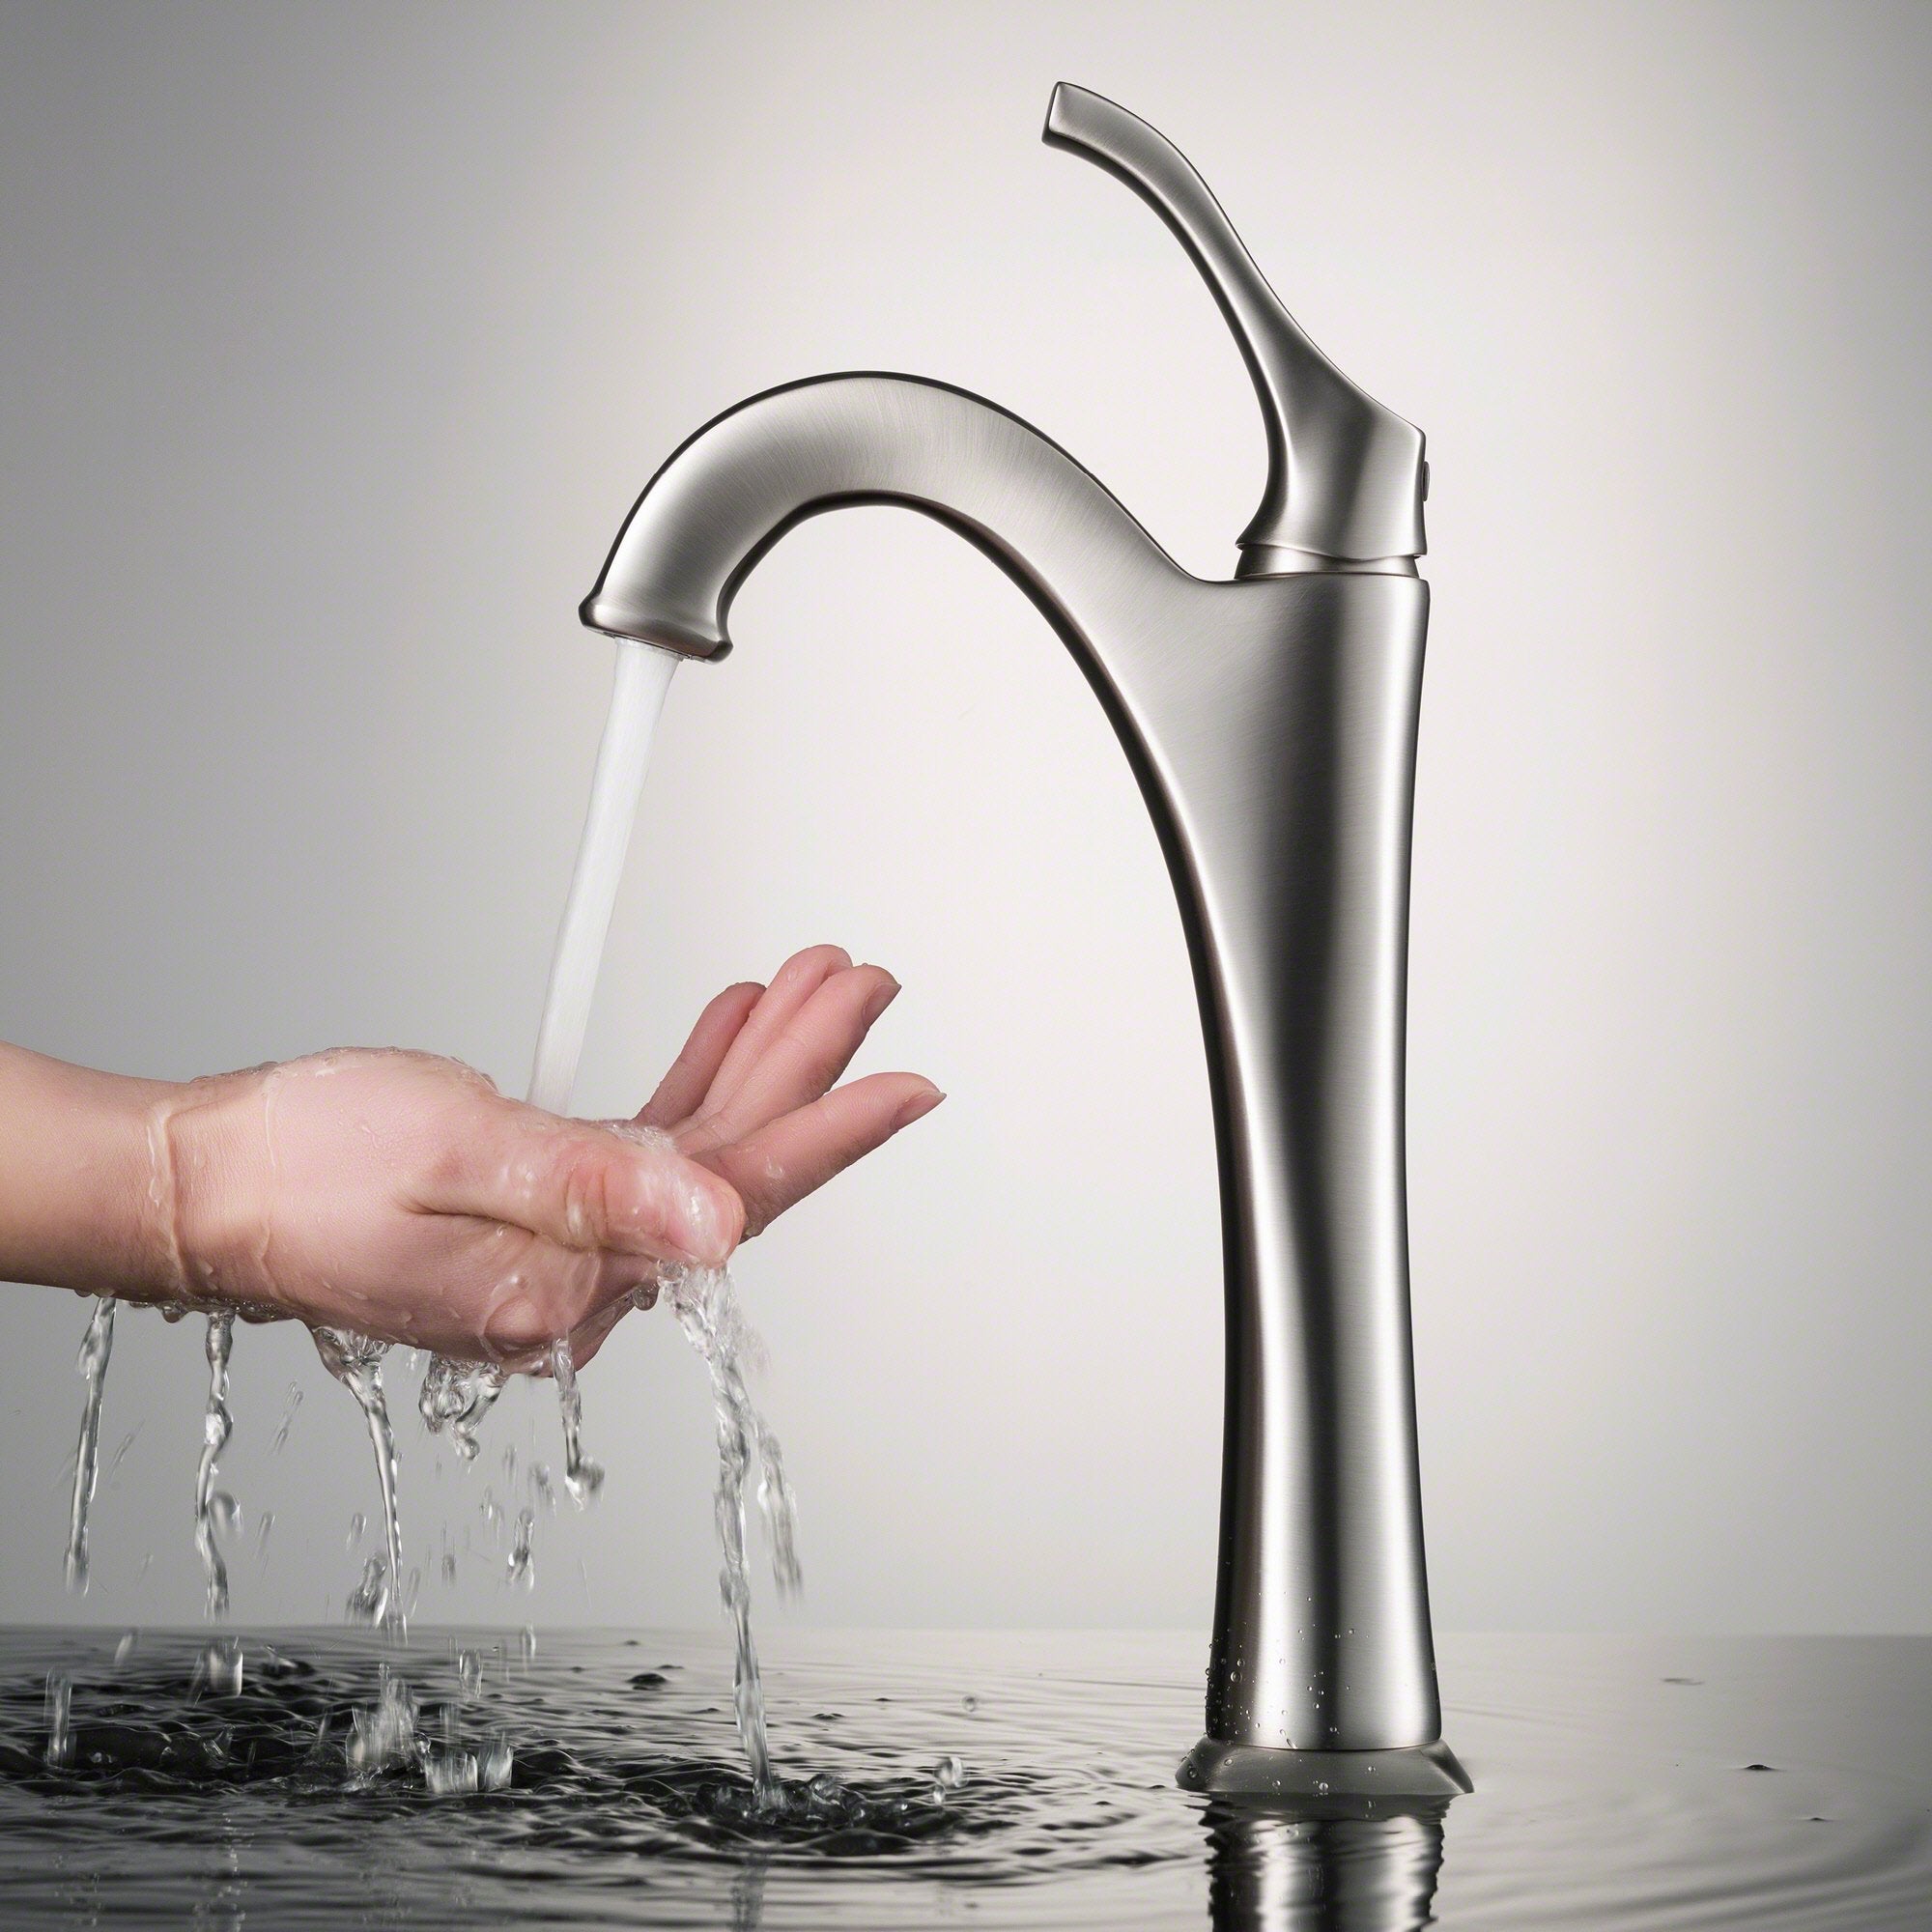 KRAUS Arlo Single Handle Vessel Bathroom Faucet in Stainless Steel KVF-1200SFS | DirectSinks